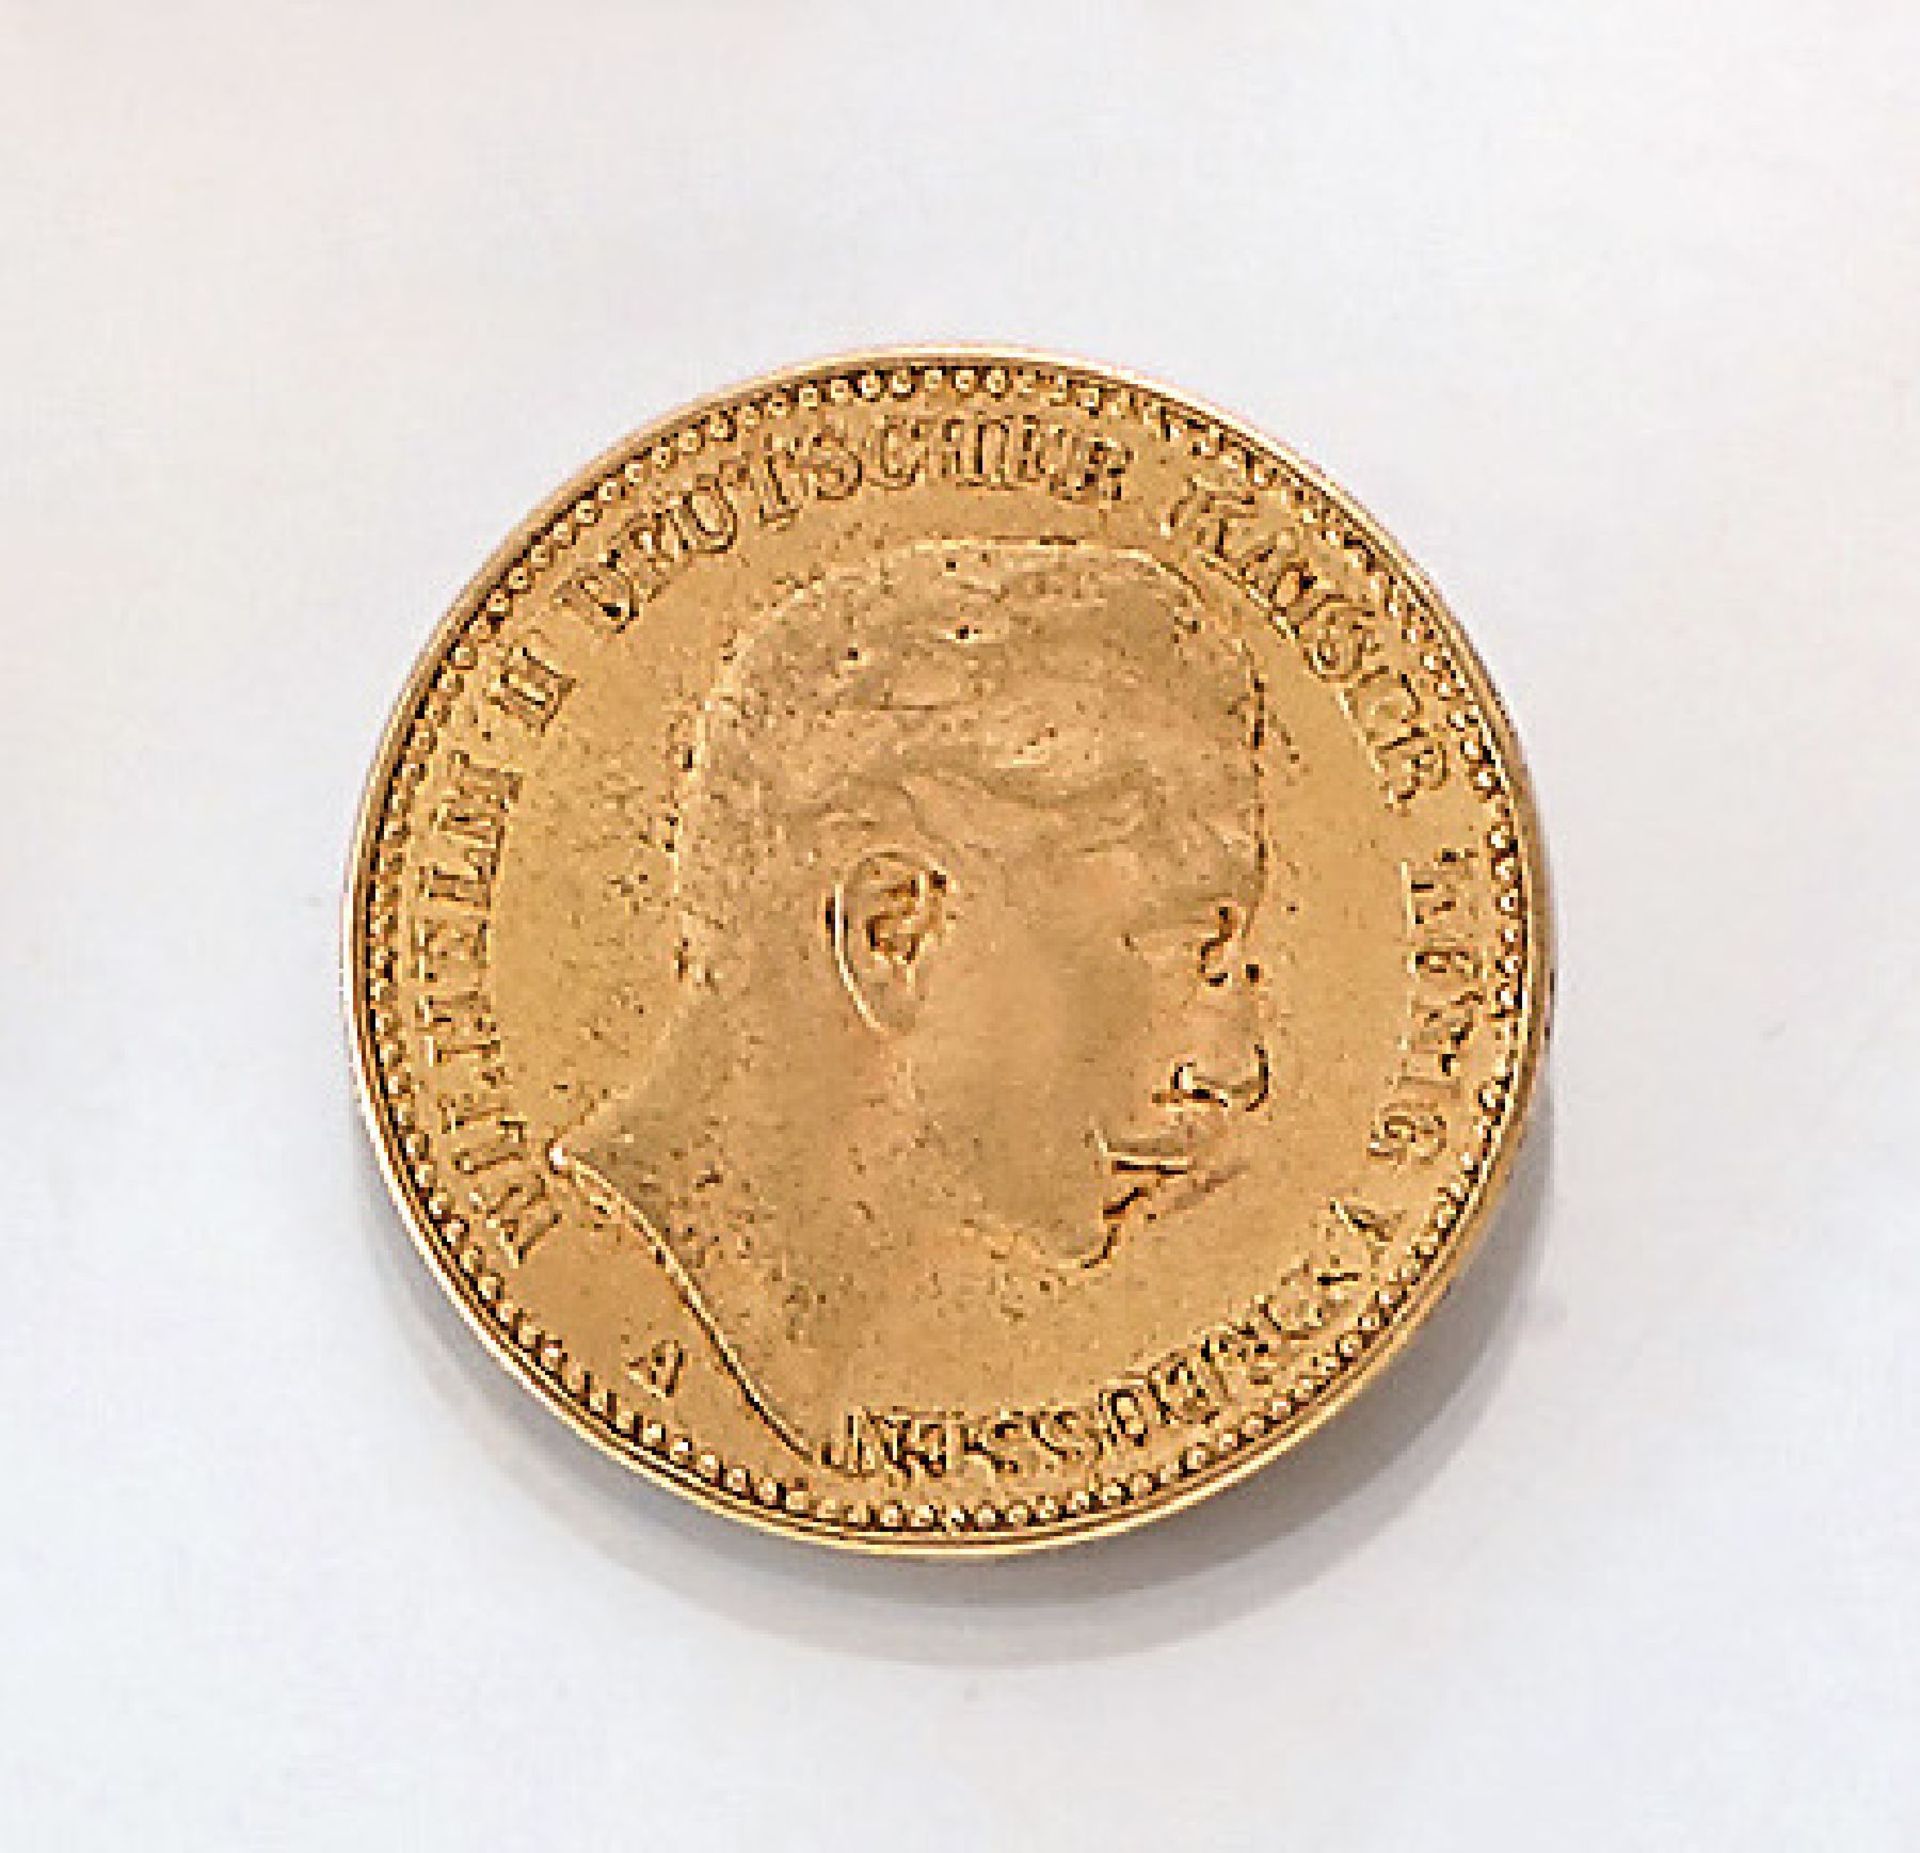 Goldmünze 20 Mark 1911, Wilhelm II., Deutscher Kaiser, König von Preussen, Prägeort AGold coin 20